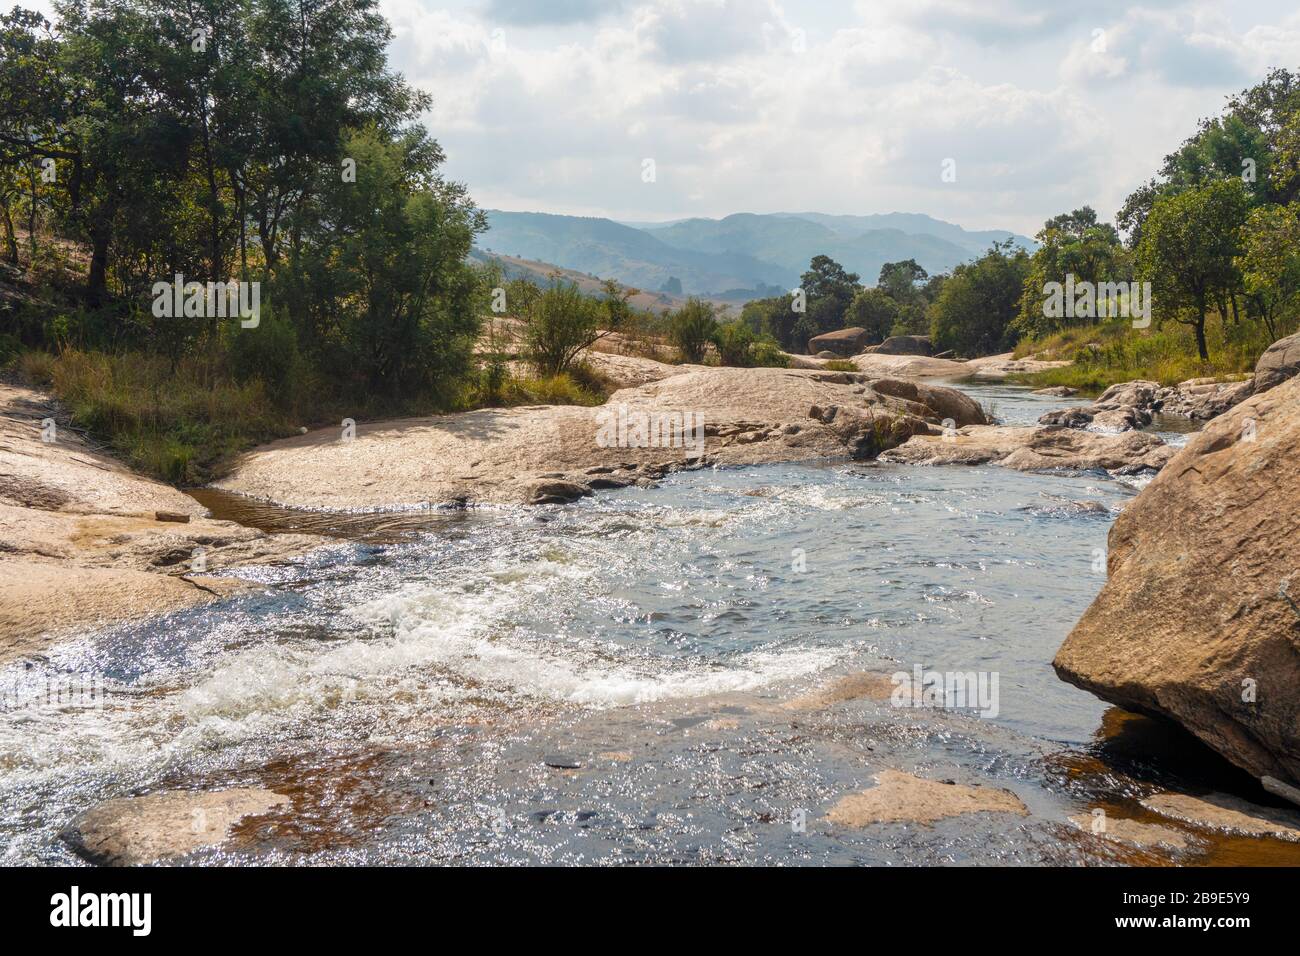 Beau paysage avec un ruisseau rocheux à Eswatini, Afrique Banque D'Images